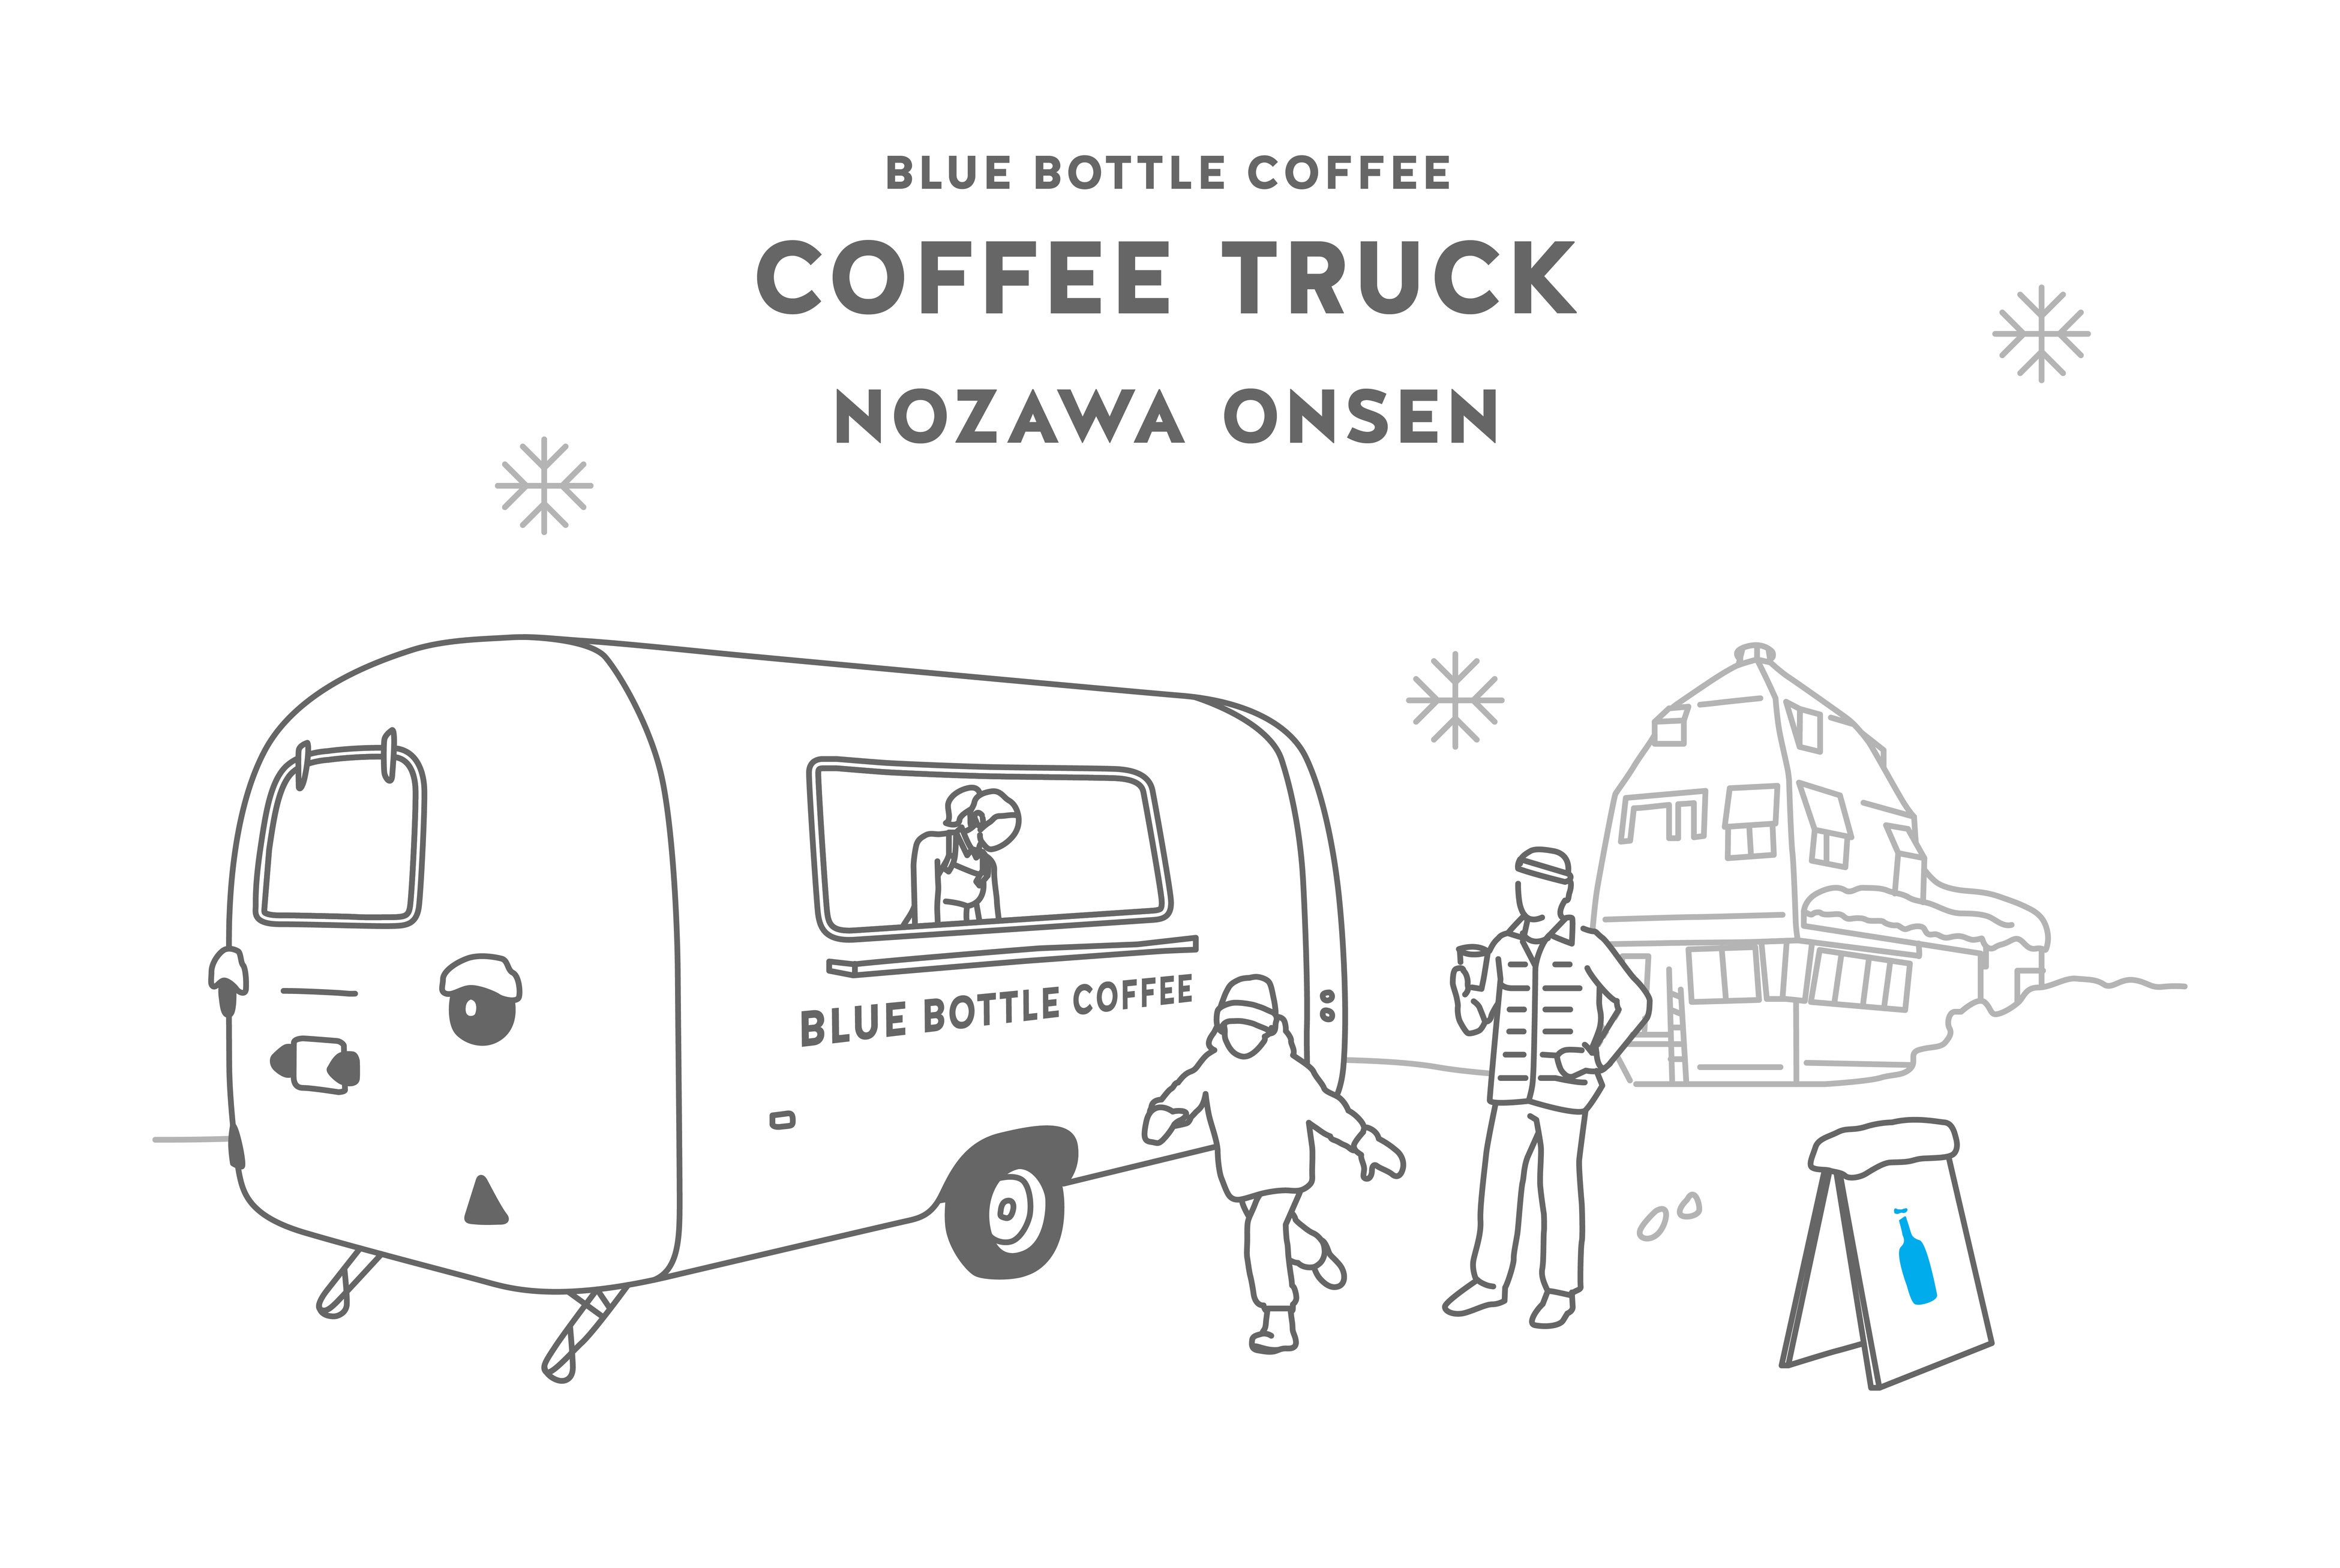 BLUE BOTTLE COFFEE TRUCK IN NOZAWA